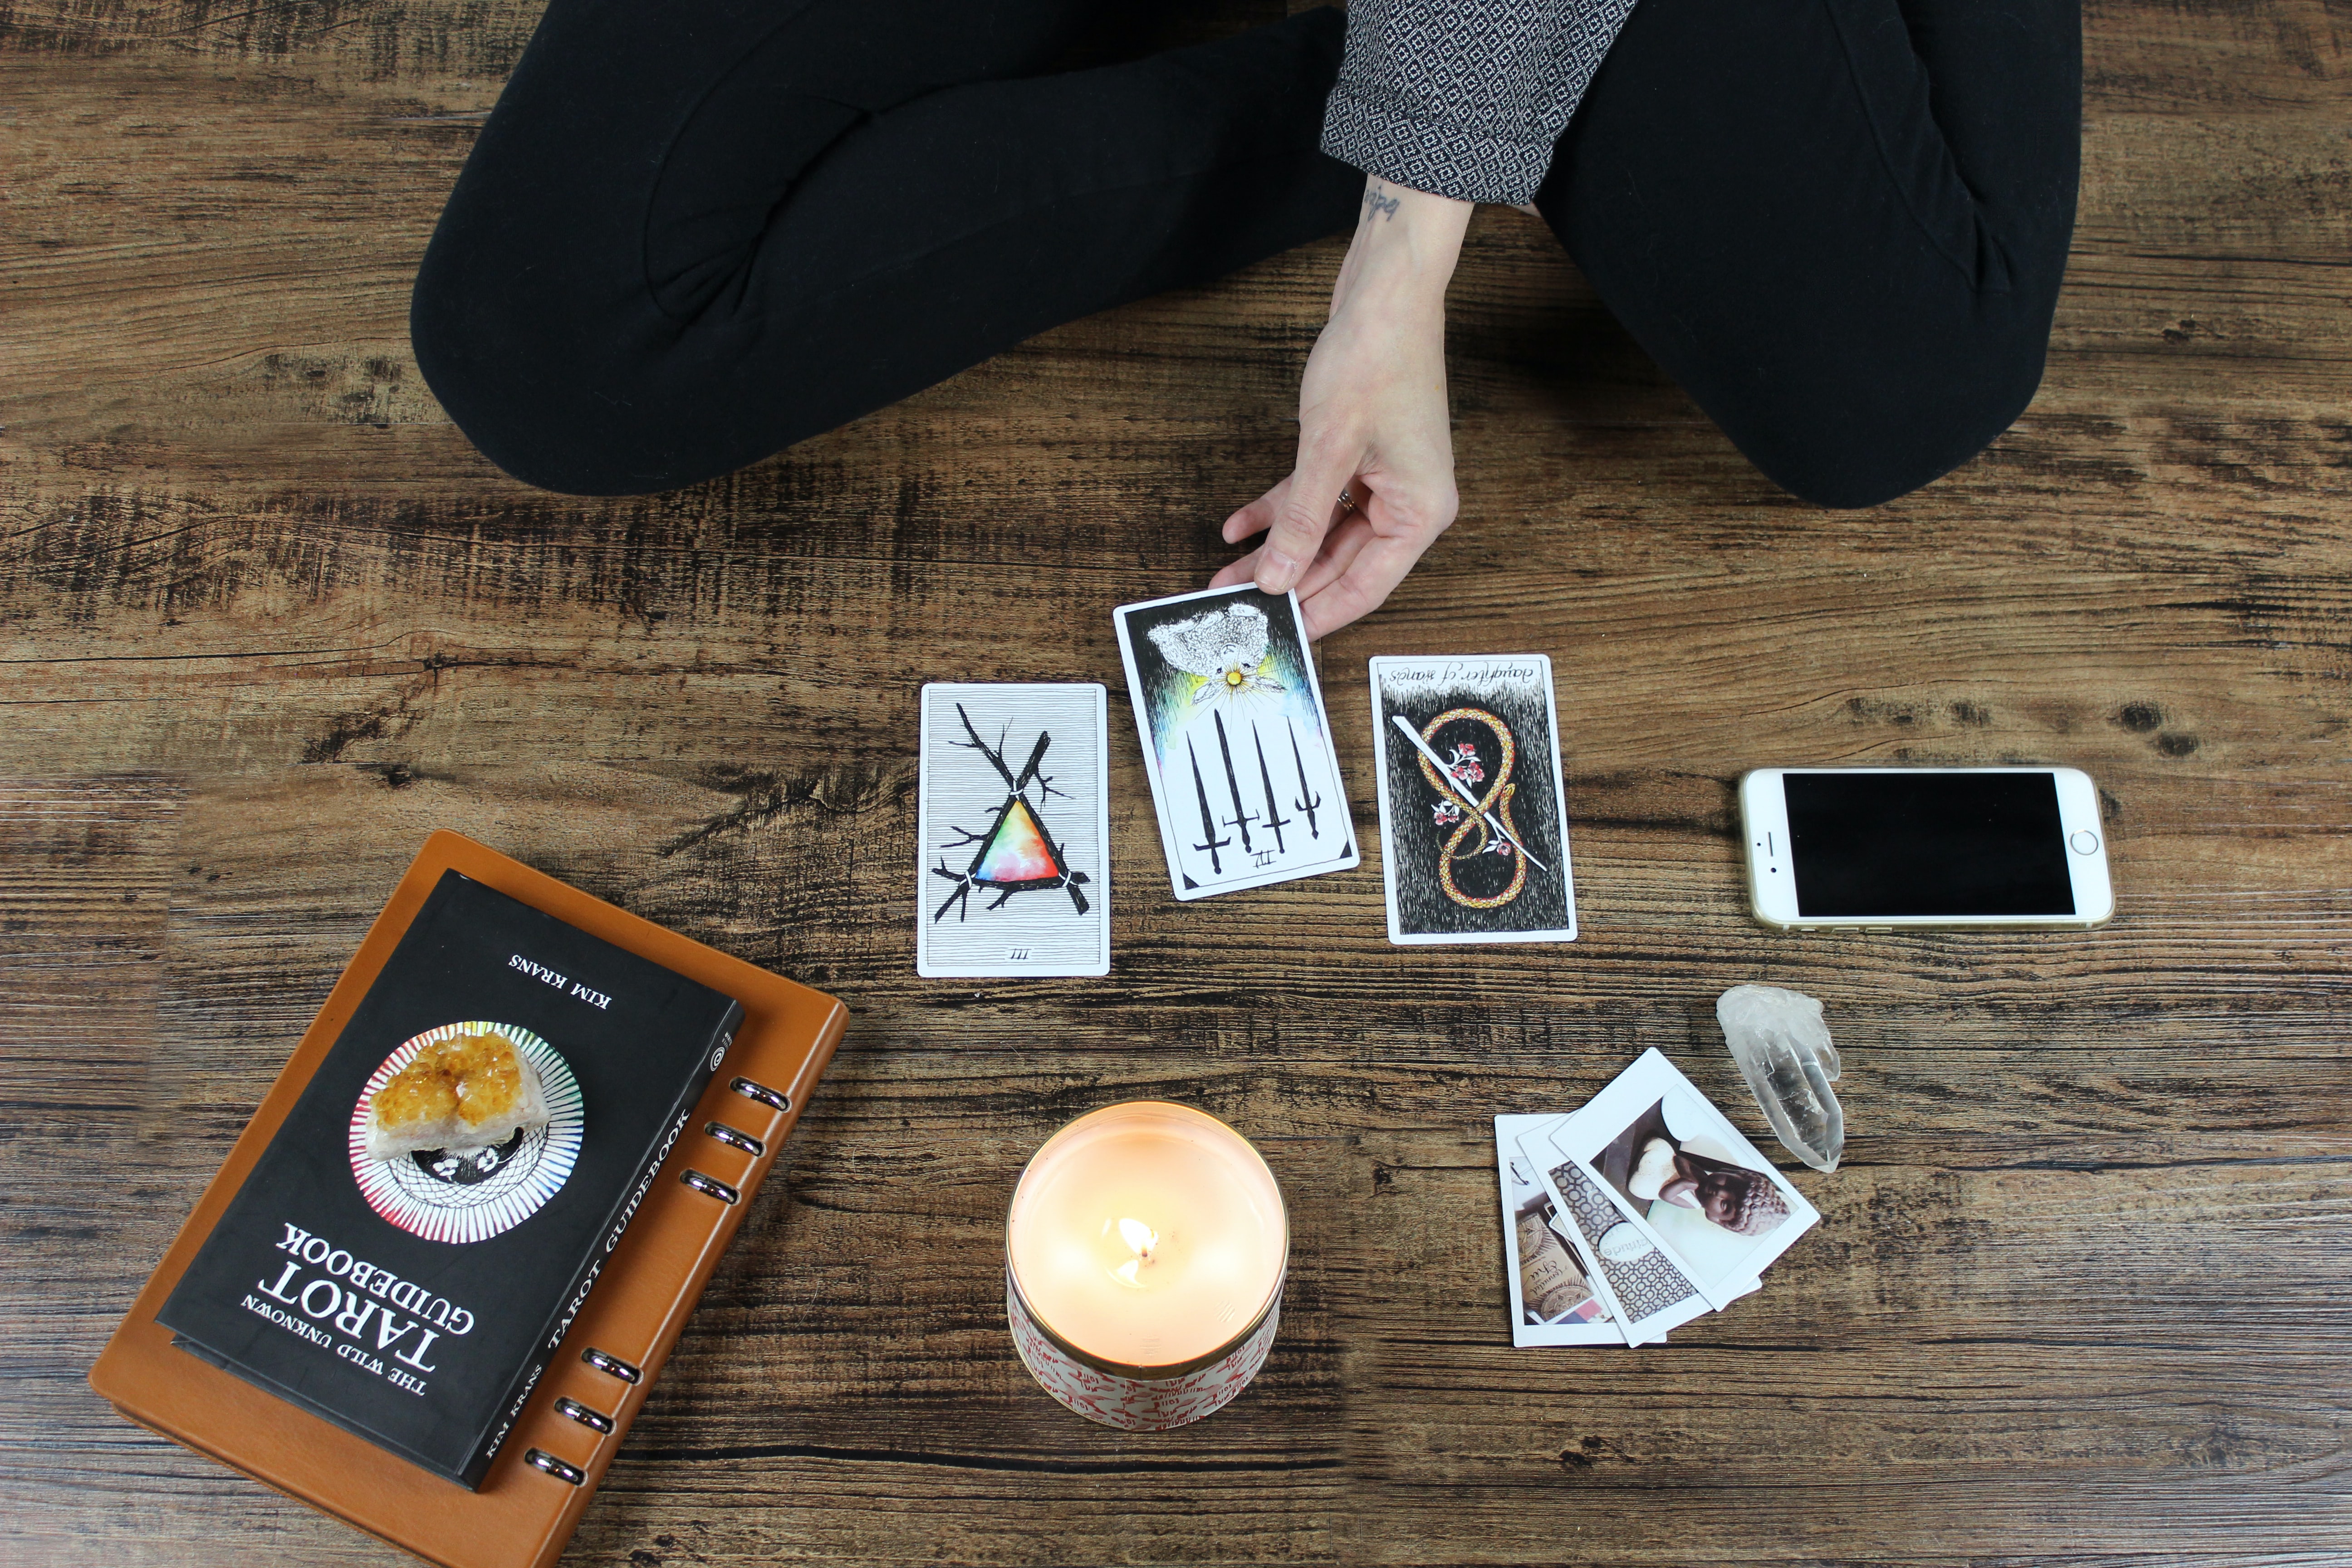 Z vykládání tarotových karet se může stát příjemný rituál spojený s meditací